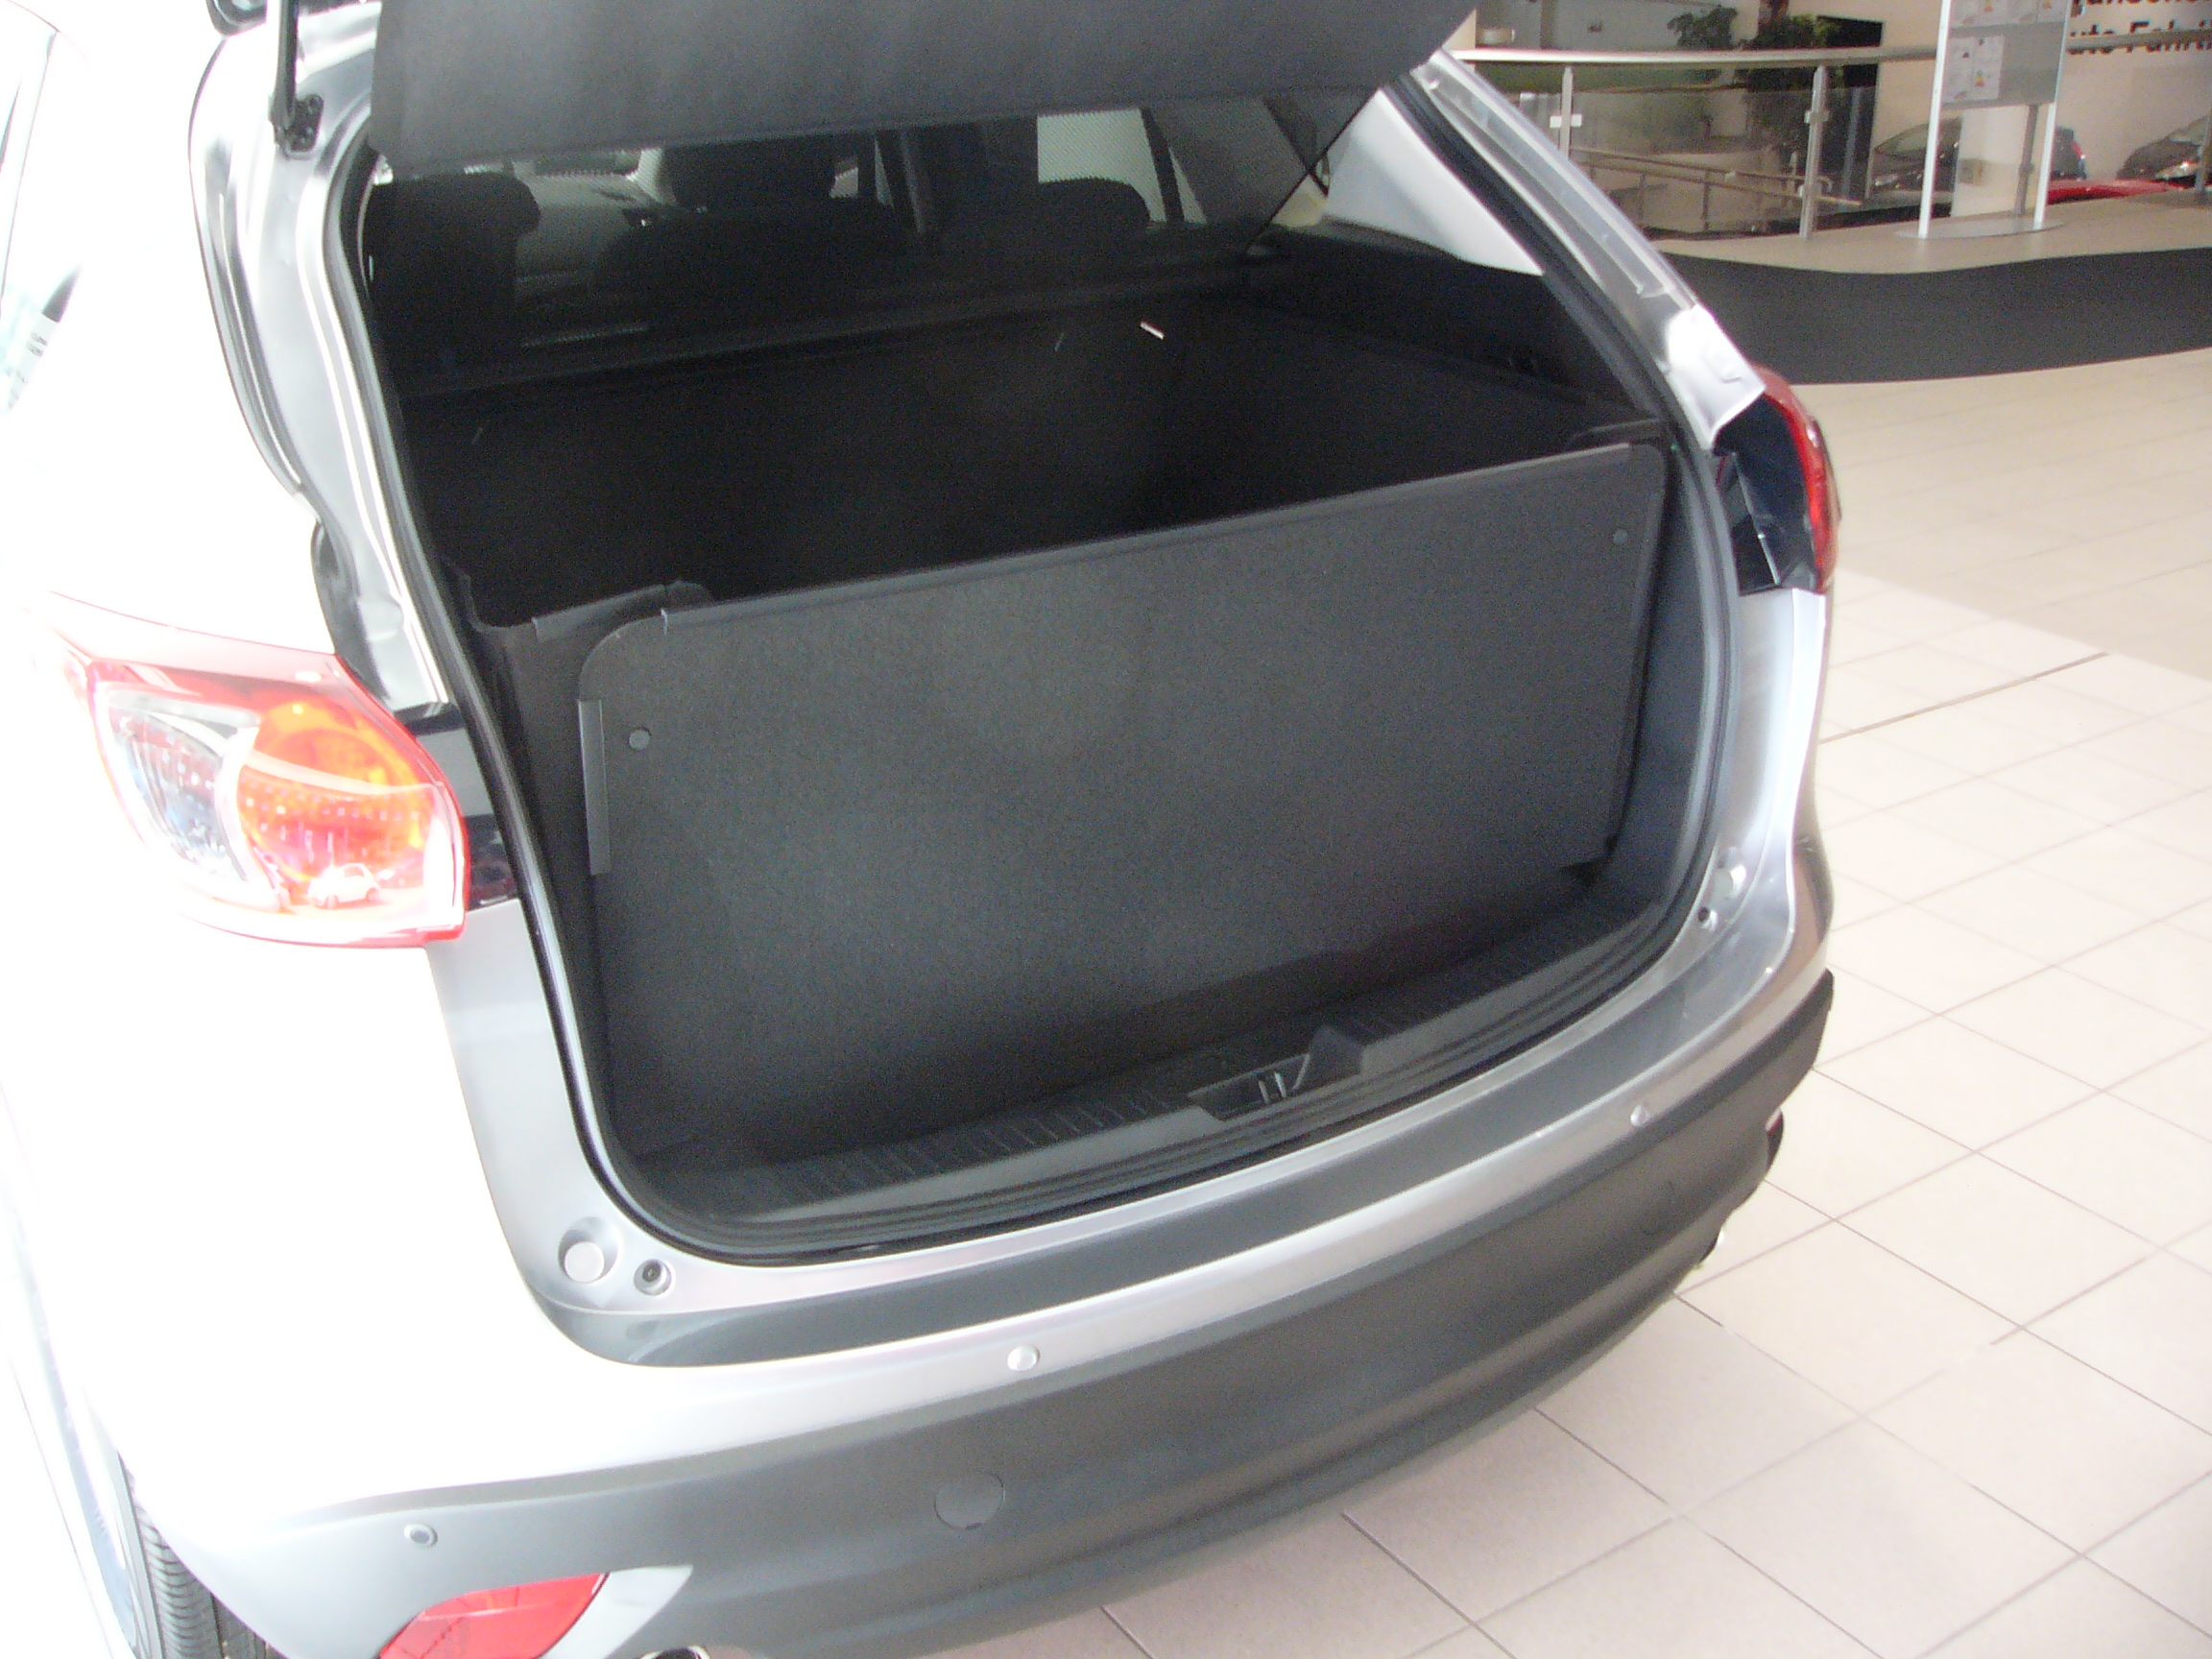 Kofferraumschutz Kofferraumwanne hoch, für Schmutz, Beschädigung. Hoher Hundebox Mazda gegen CX-5, Nässe passgenaue und